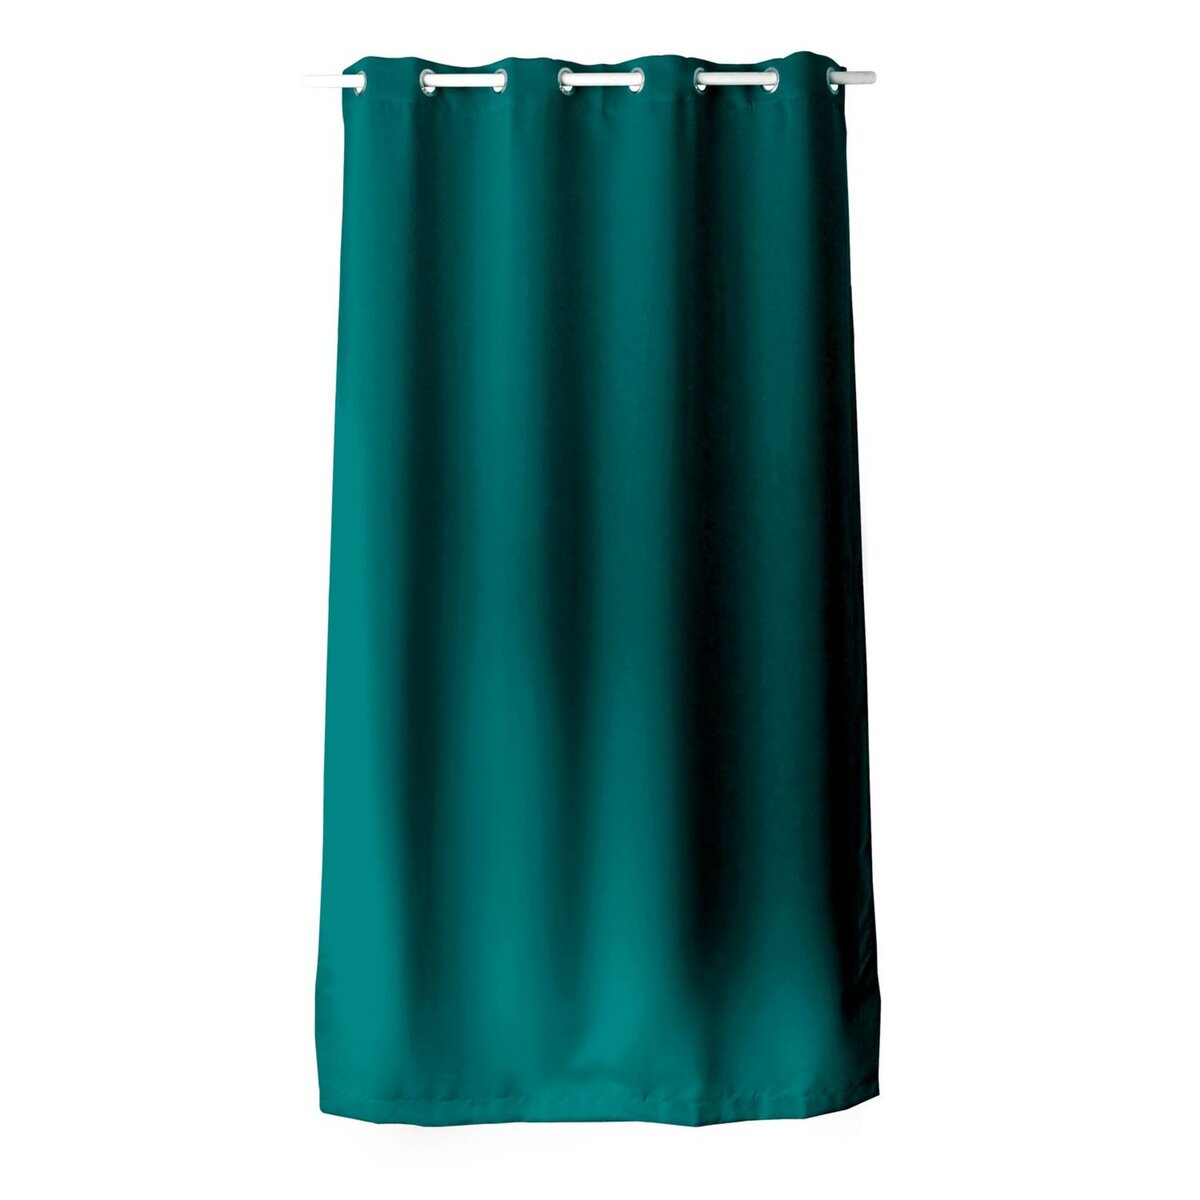 TOILINUX Rideau en toile unie Basic à 8 œillets - Longueur 240 cm x largeur 140 cm - Vert émeraude